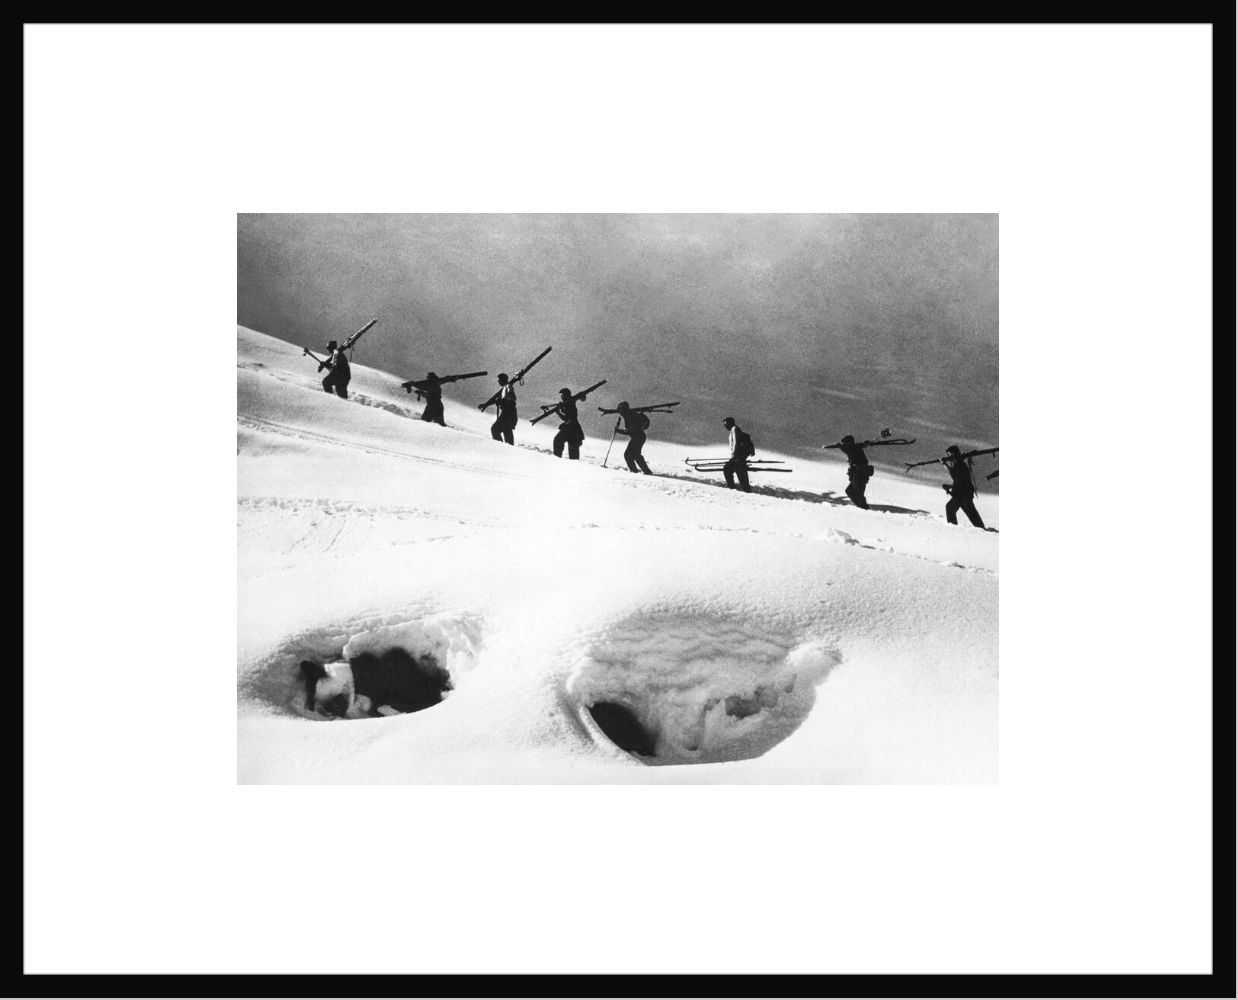 Fotografia Skieurs en file indienne 1954 -  GAMMA AGENCY - Pittura di immagini